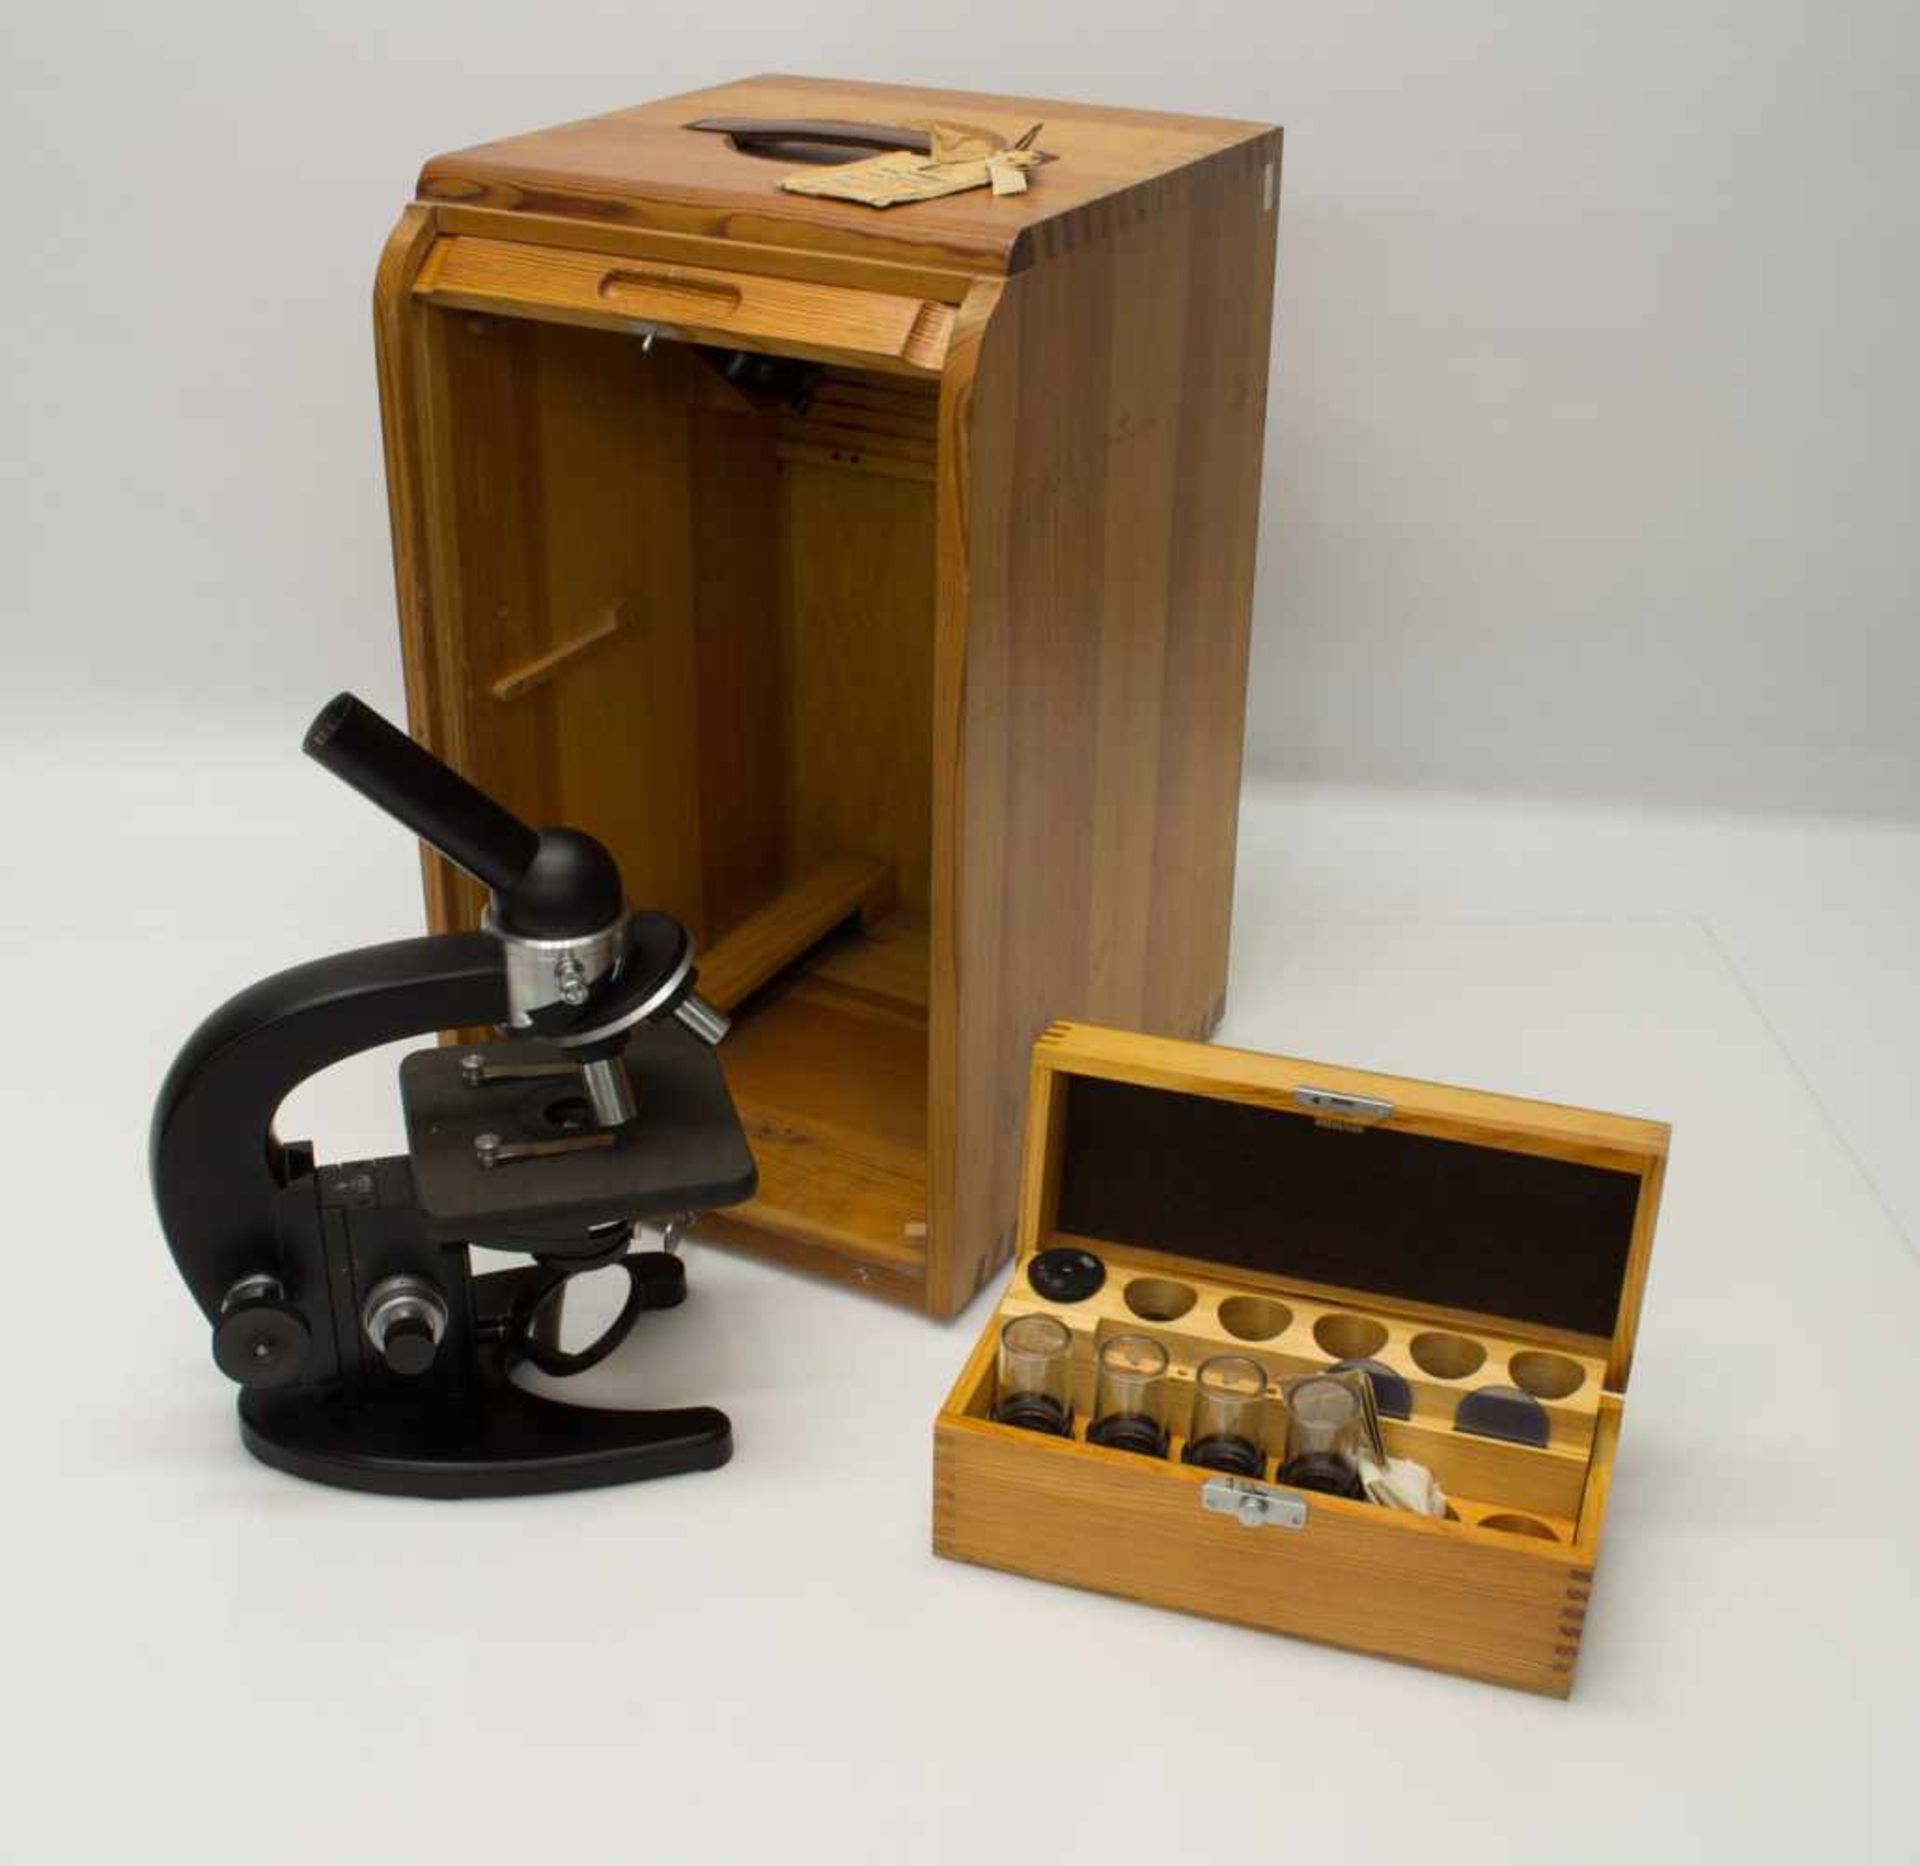 TischmikroskopMikroskop Carl Zeiss Jena, Nr. 449591, 1Q-Qualtität, im Original Holzkasten, keine